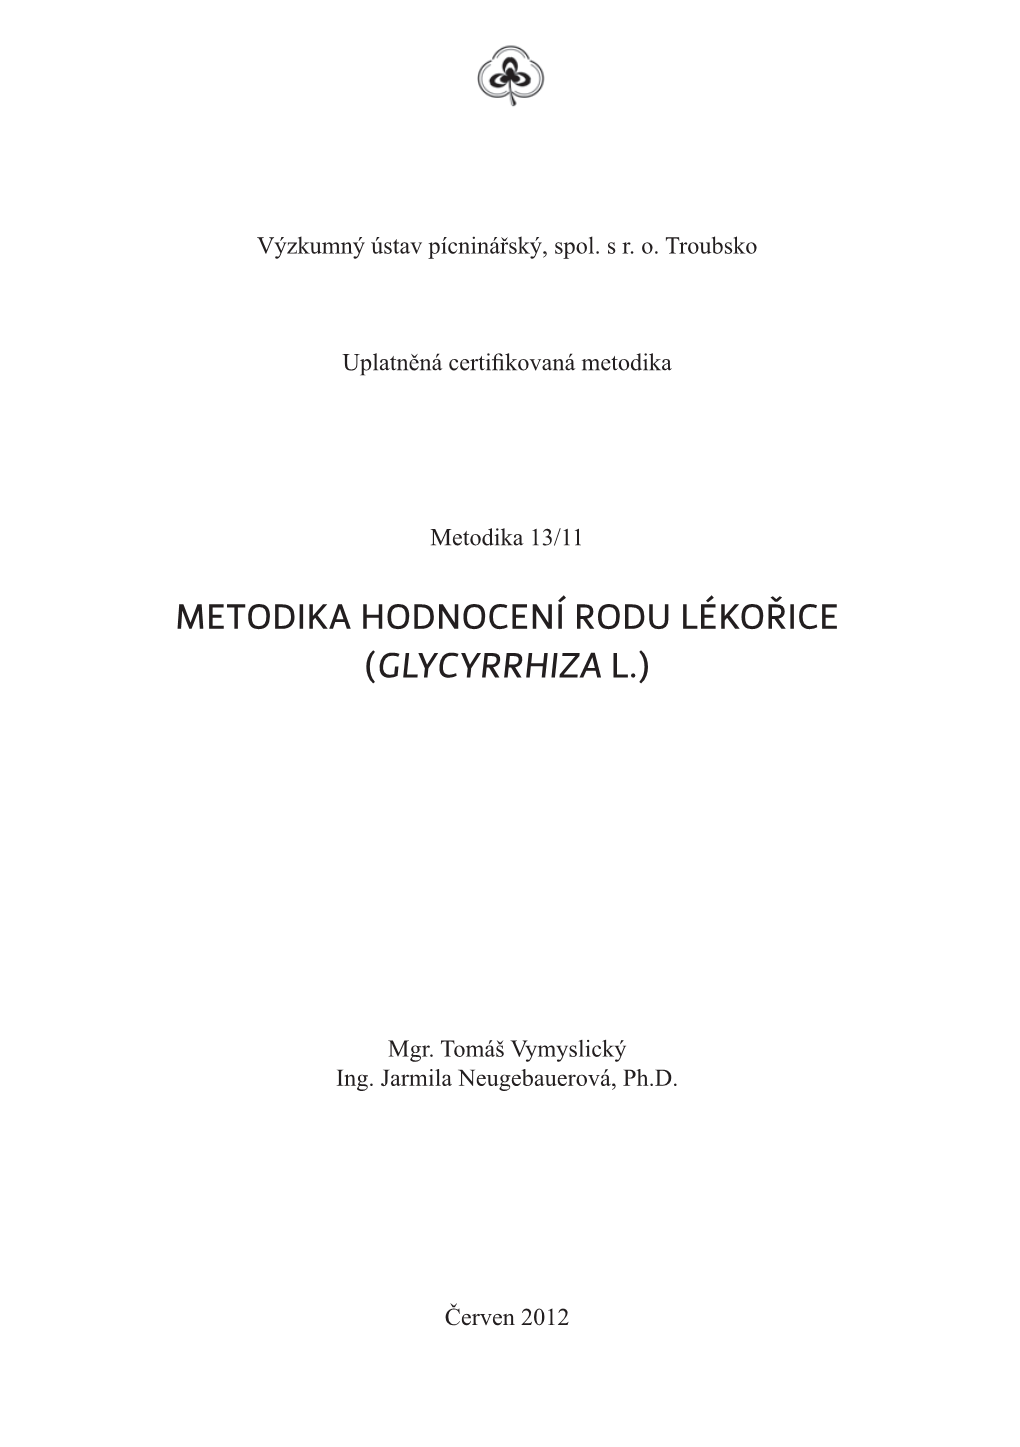 Metodika Hodnocení Rodu Lékořice (Glycyrrhiza L.)